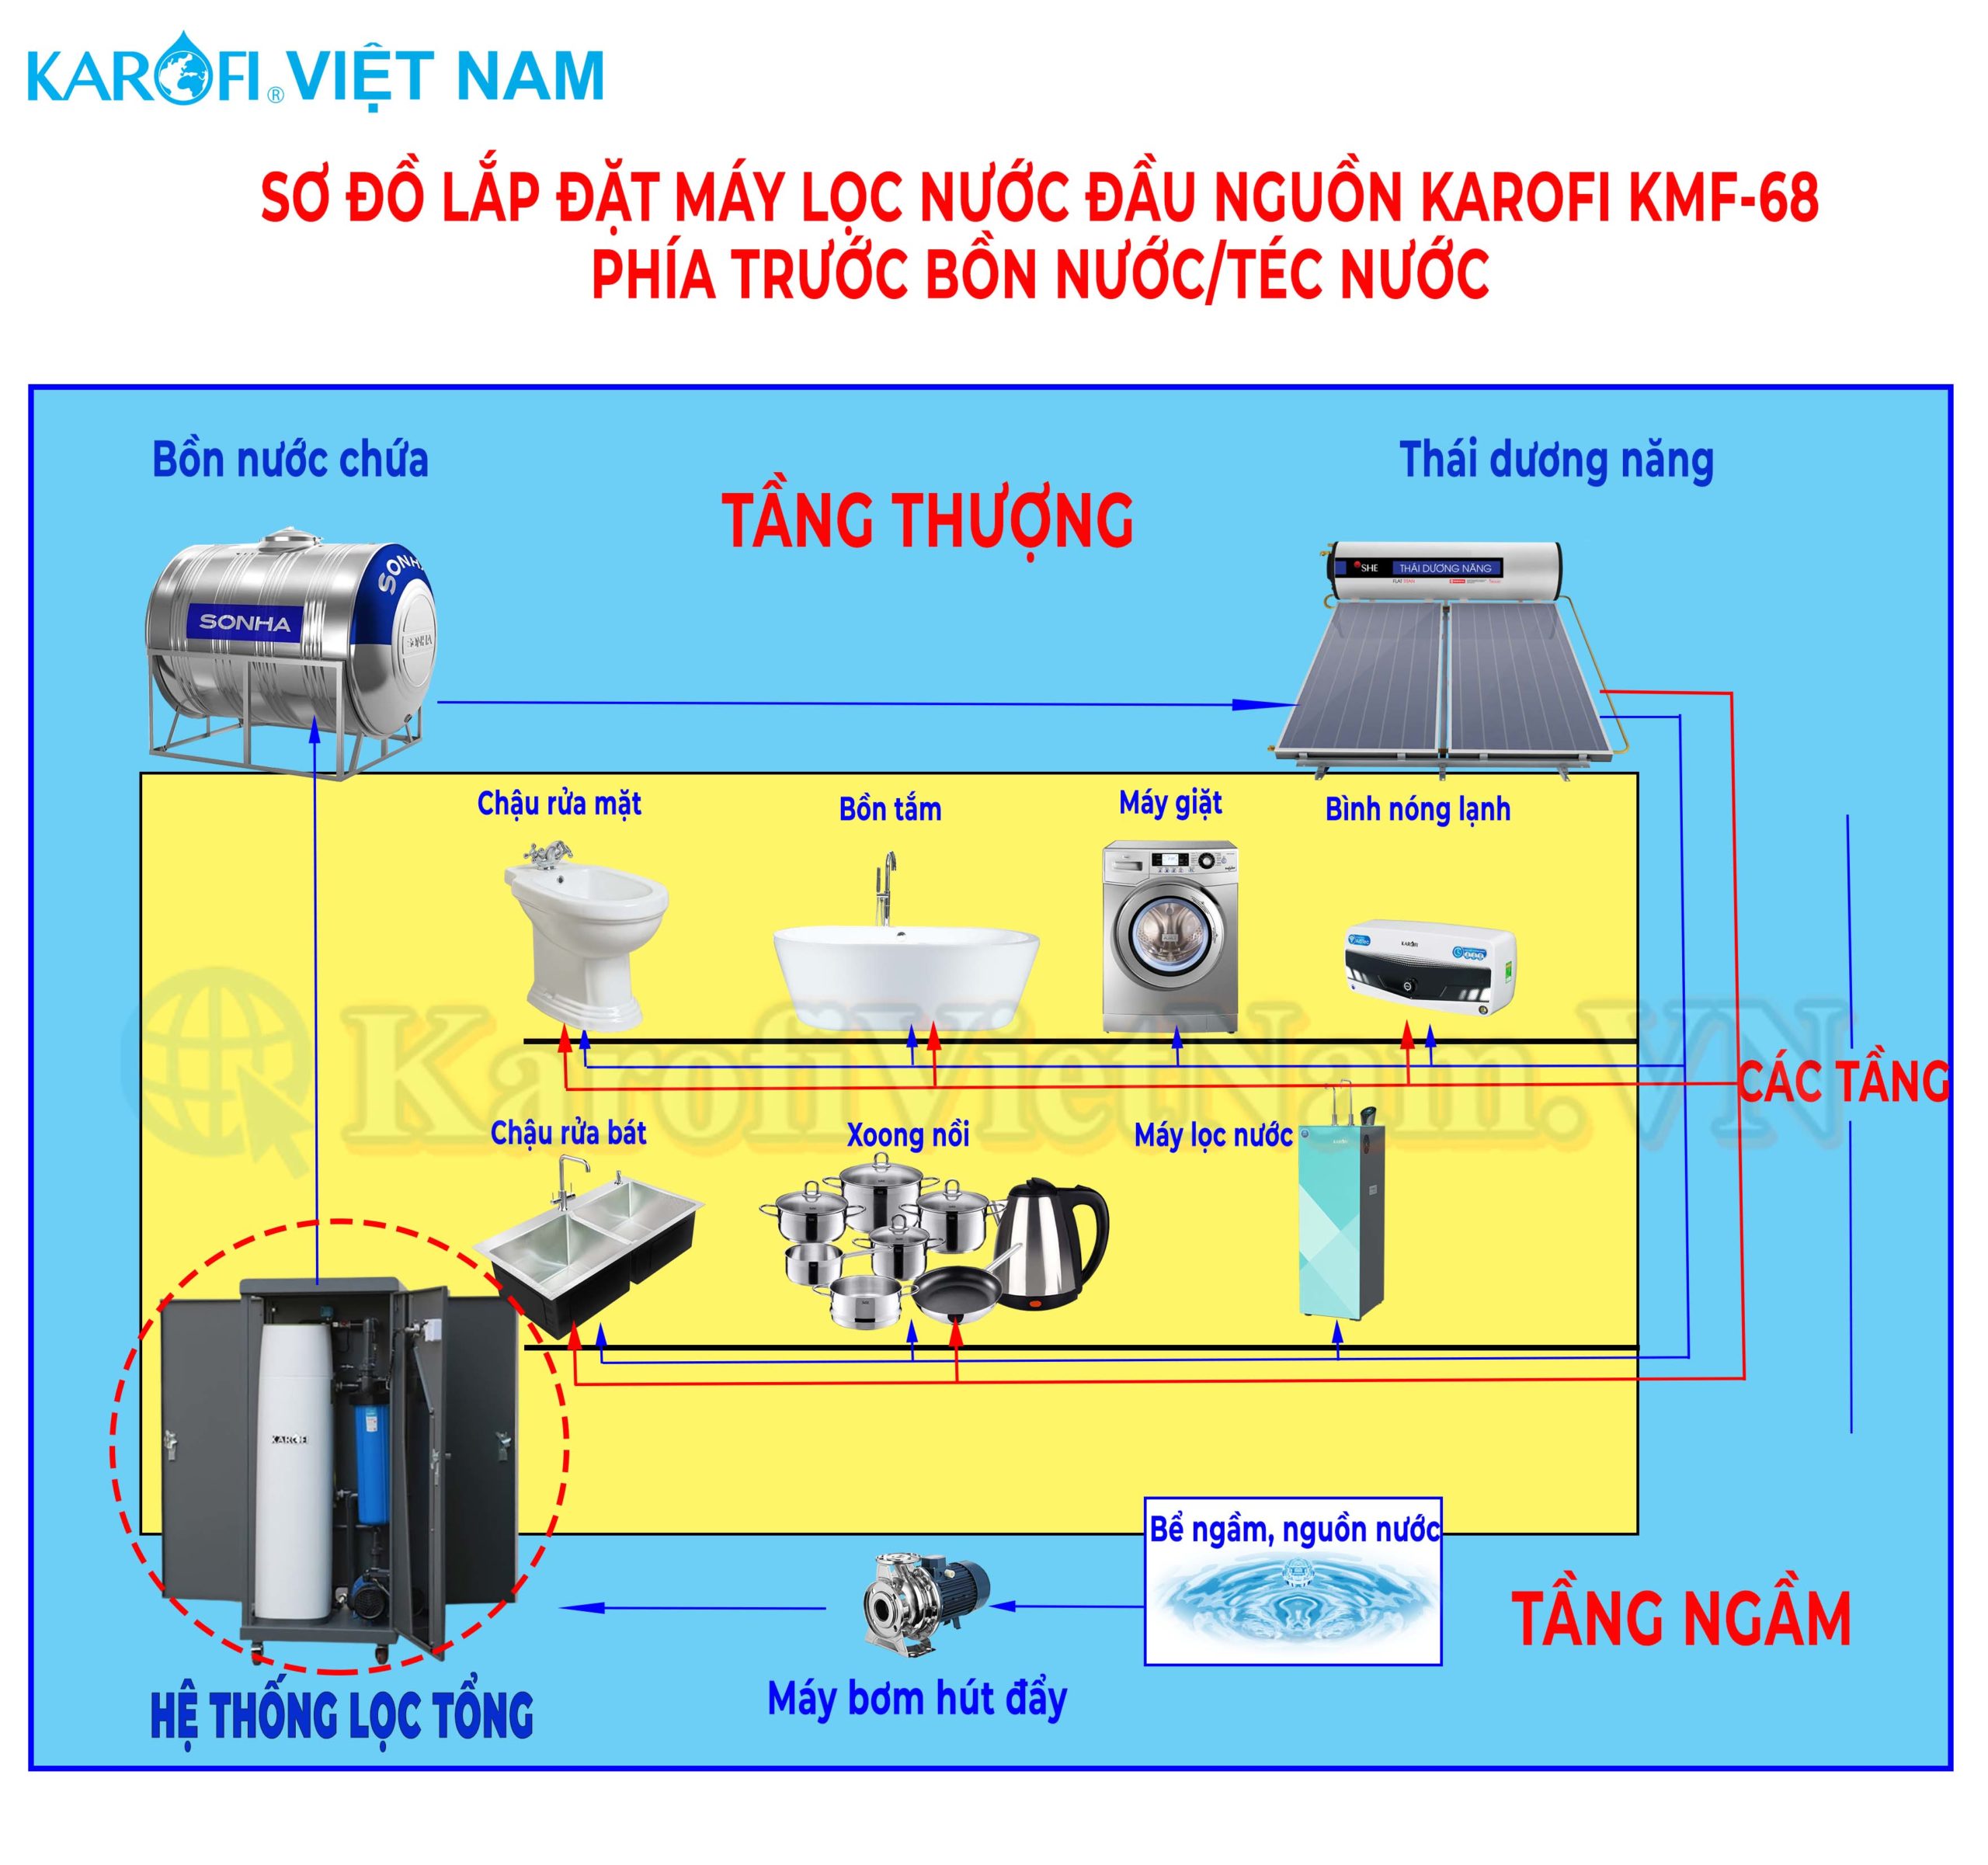 Sơ đồ lắp đặt hệ thống lọc đầu nguồn Karofi KMF-68 trước bồn nước